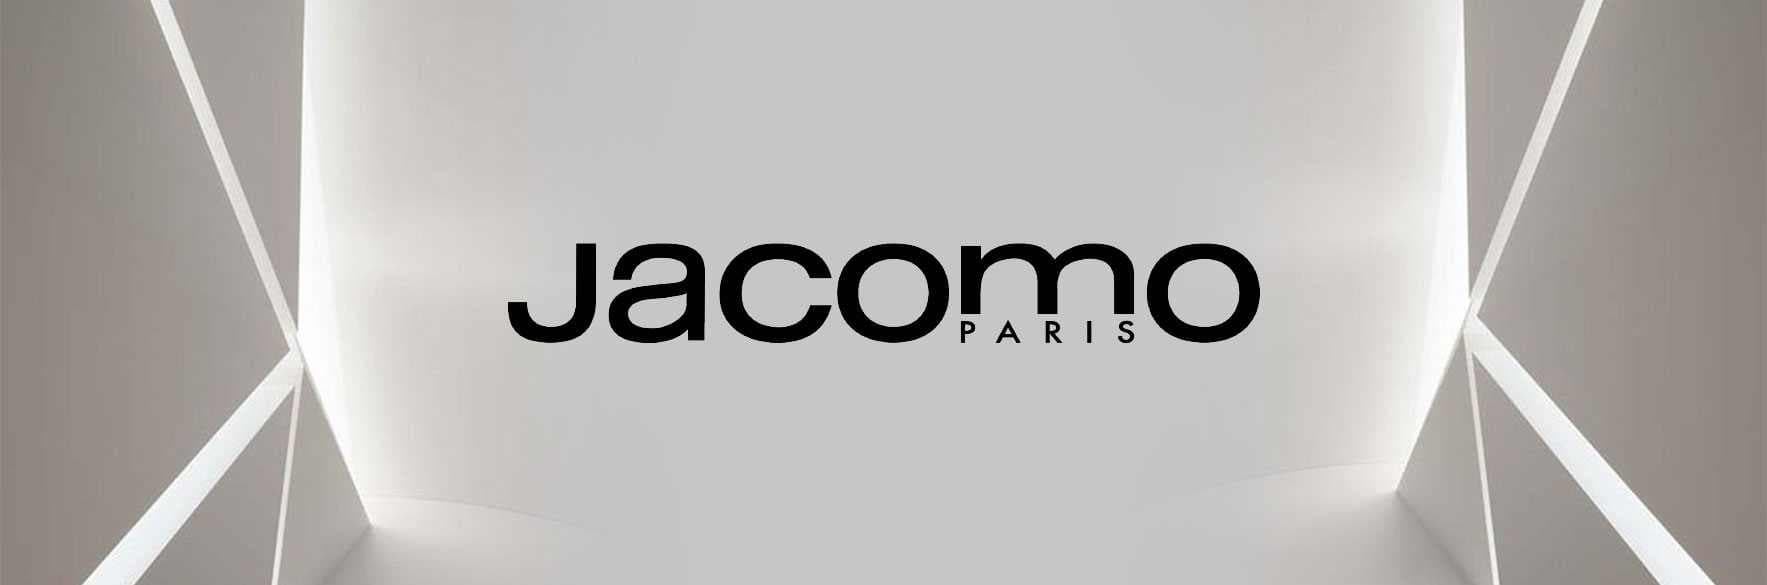 محصولات جکومو JACOMO امریکایی